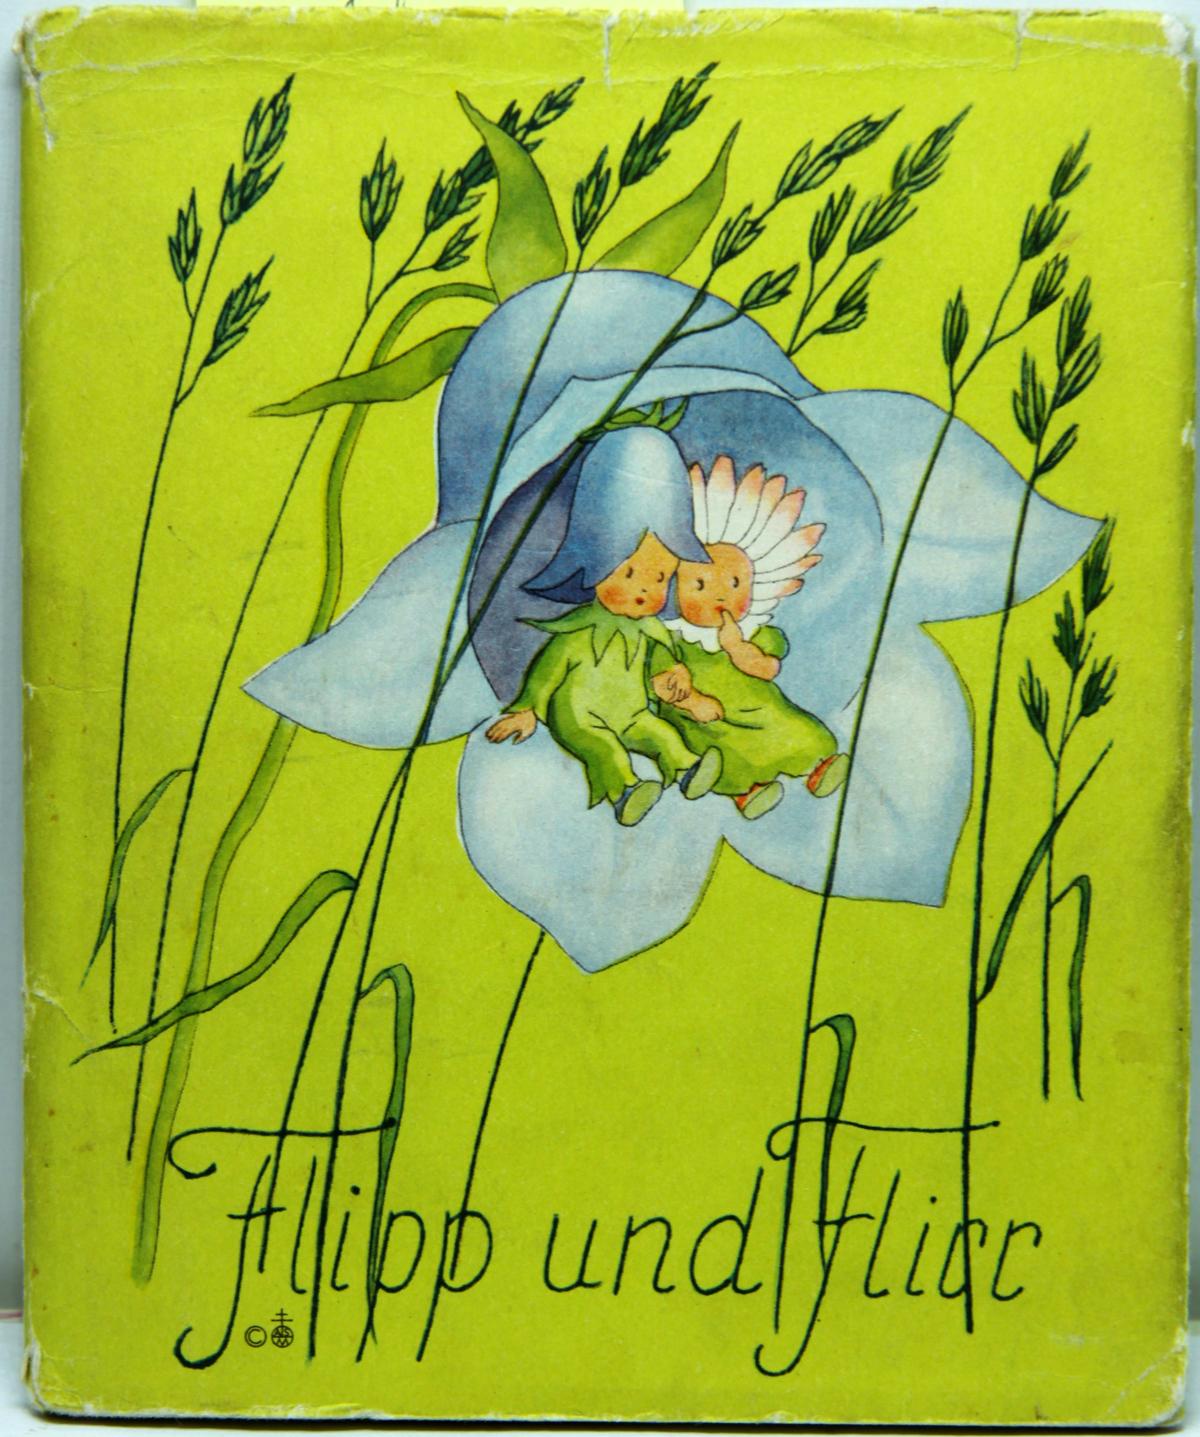 Buch "Flipp und Flirr" Ida Bohatta-Morpurgo